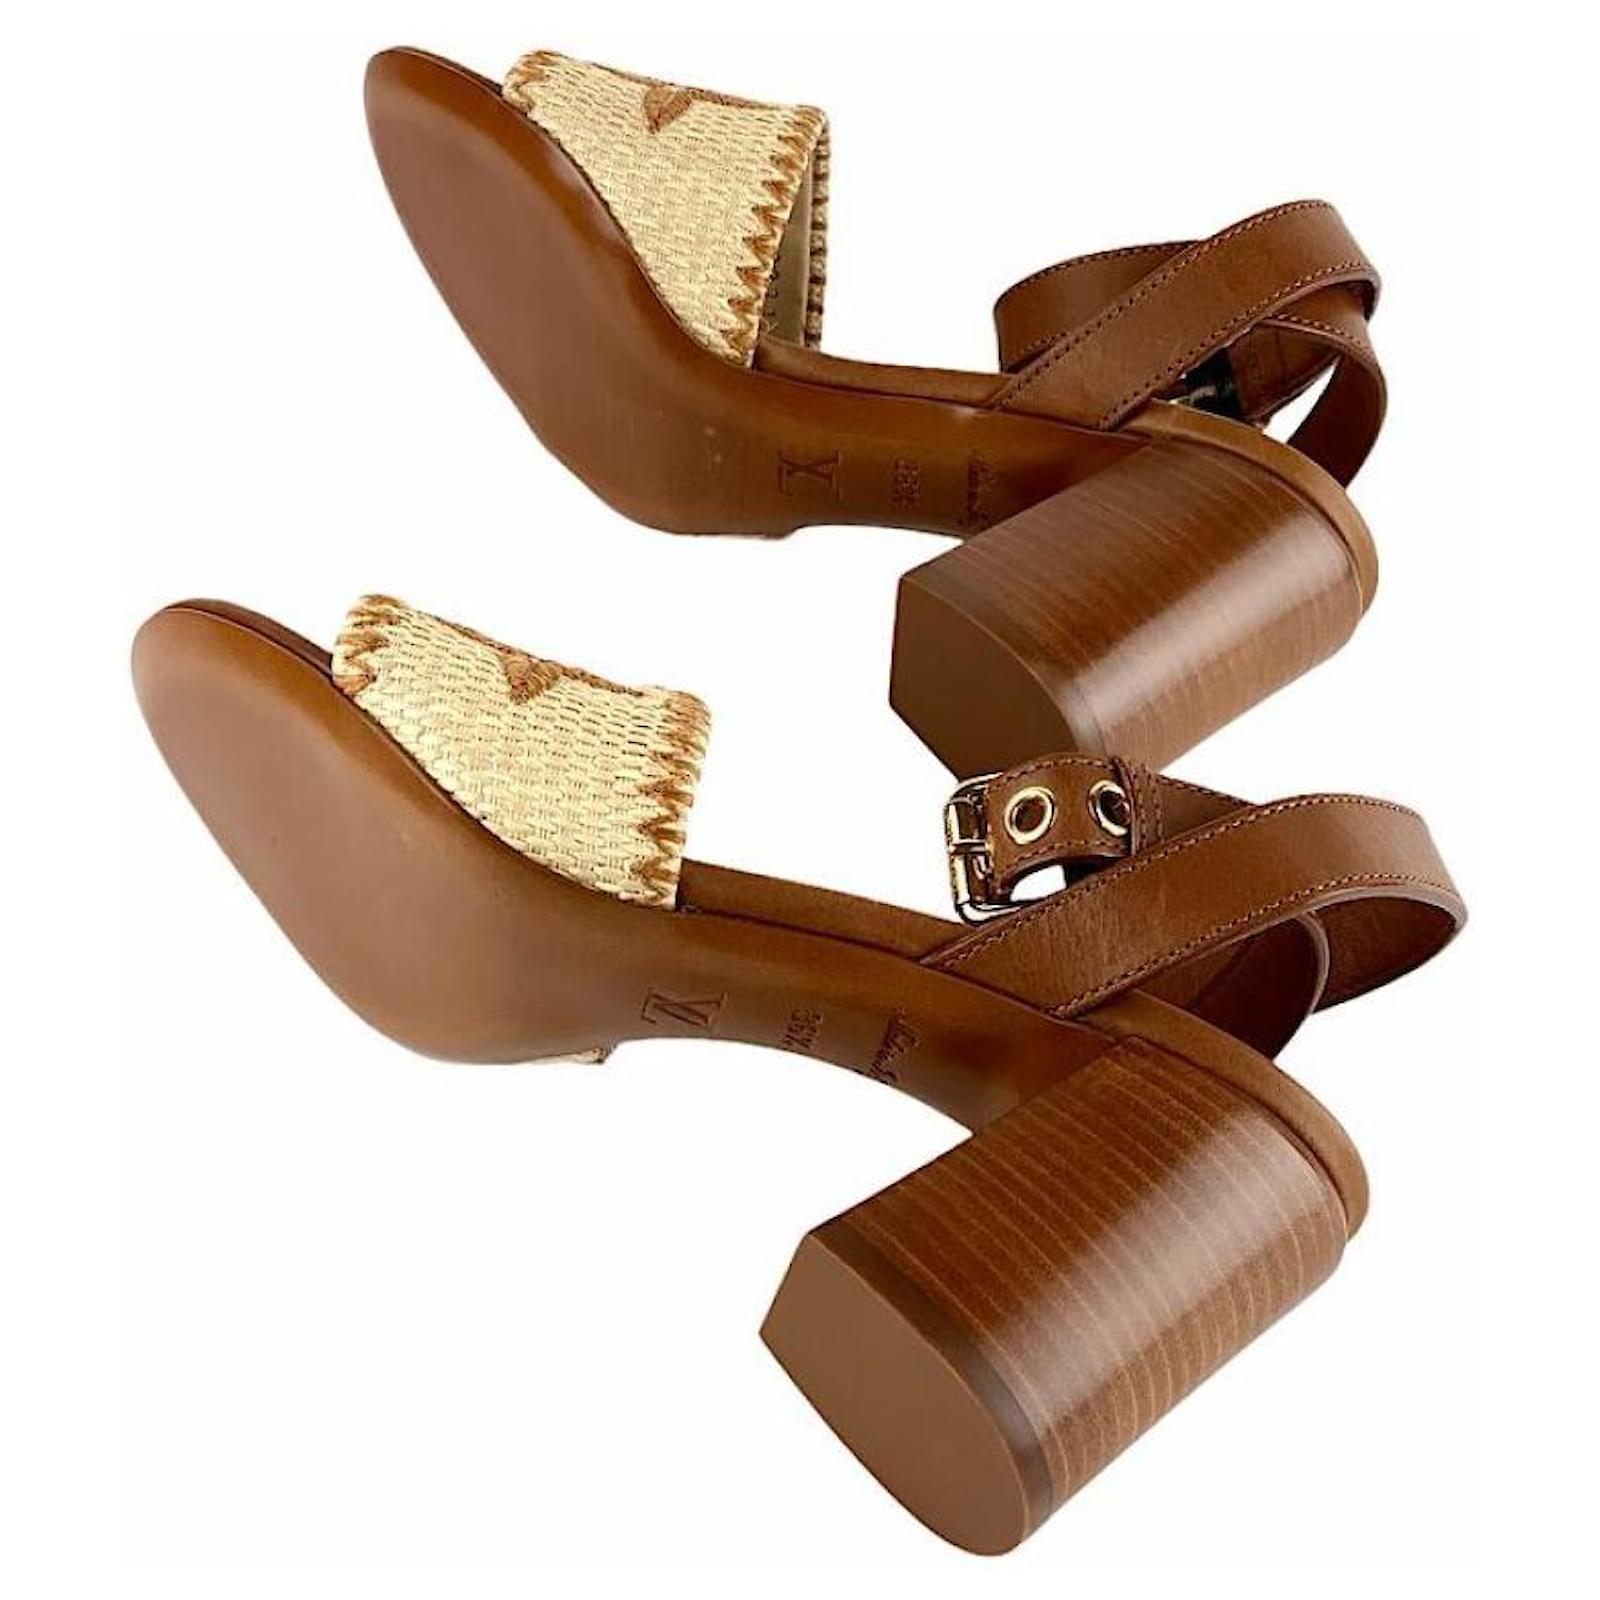 Louis Vuitton Sienna Line Raffia Heeled Sandals Brown with Box